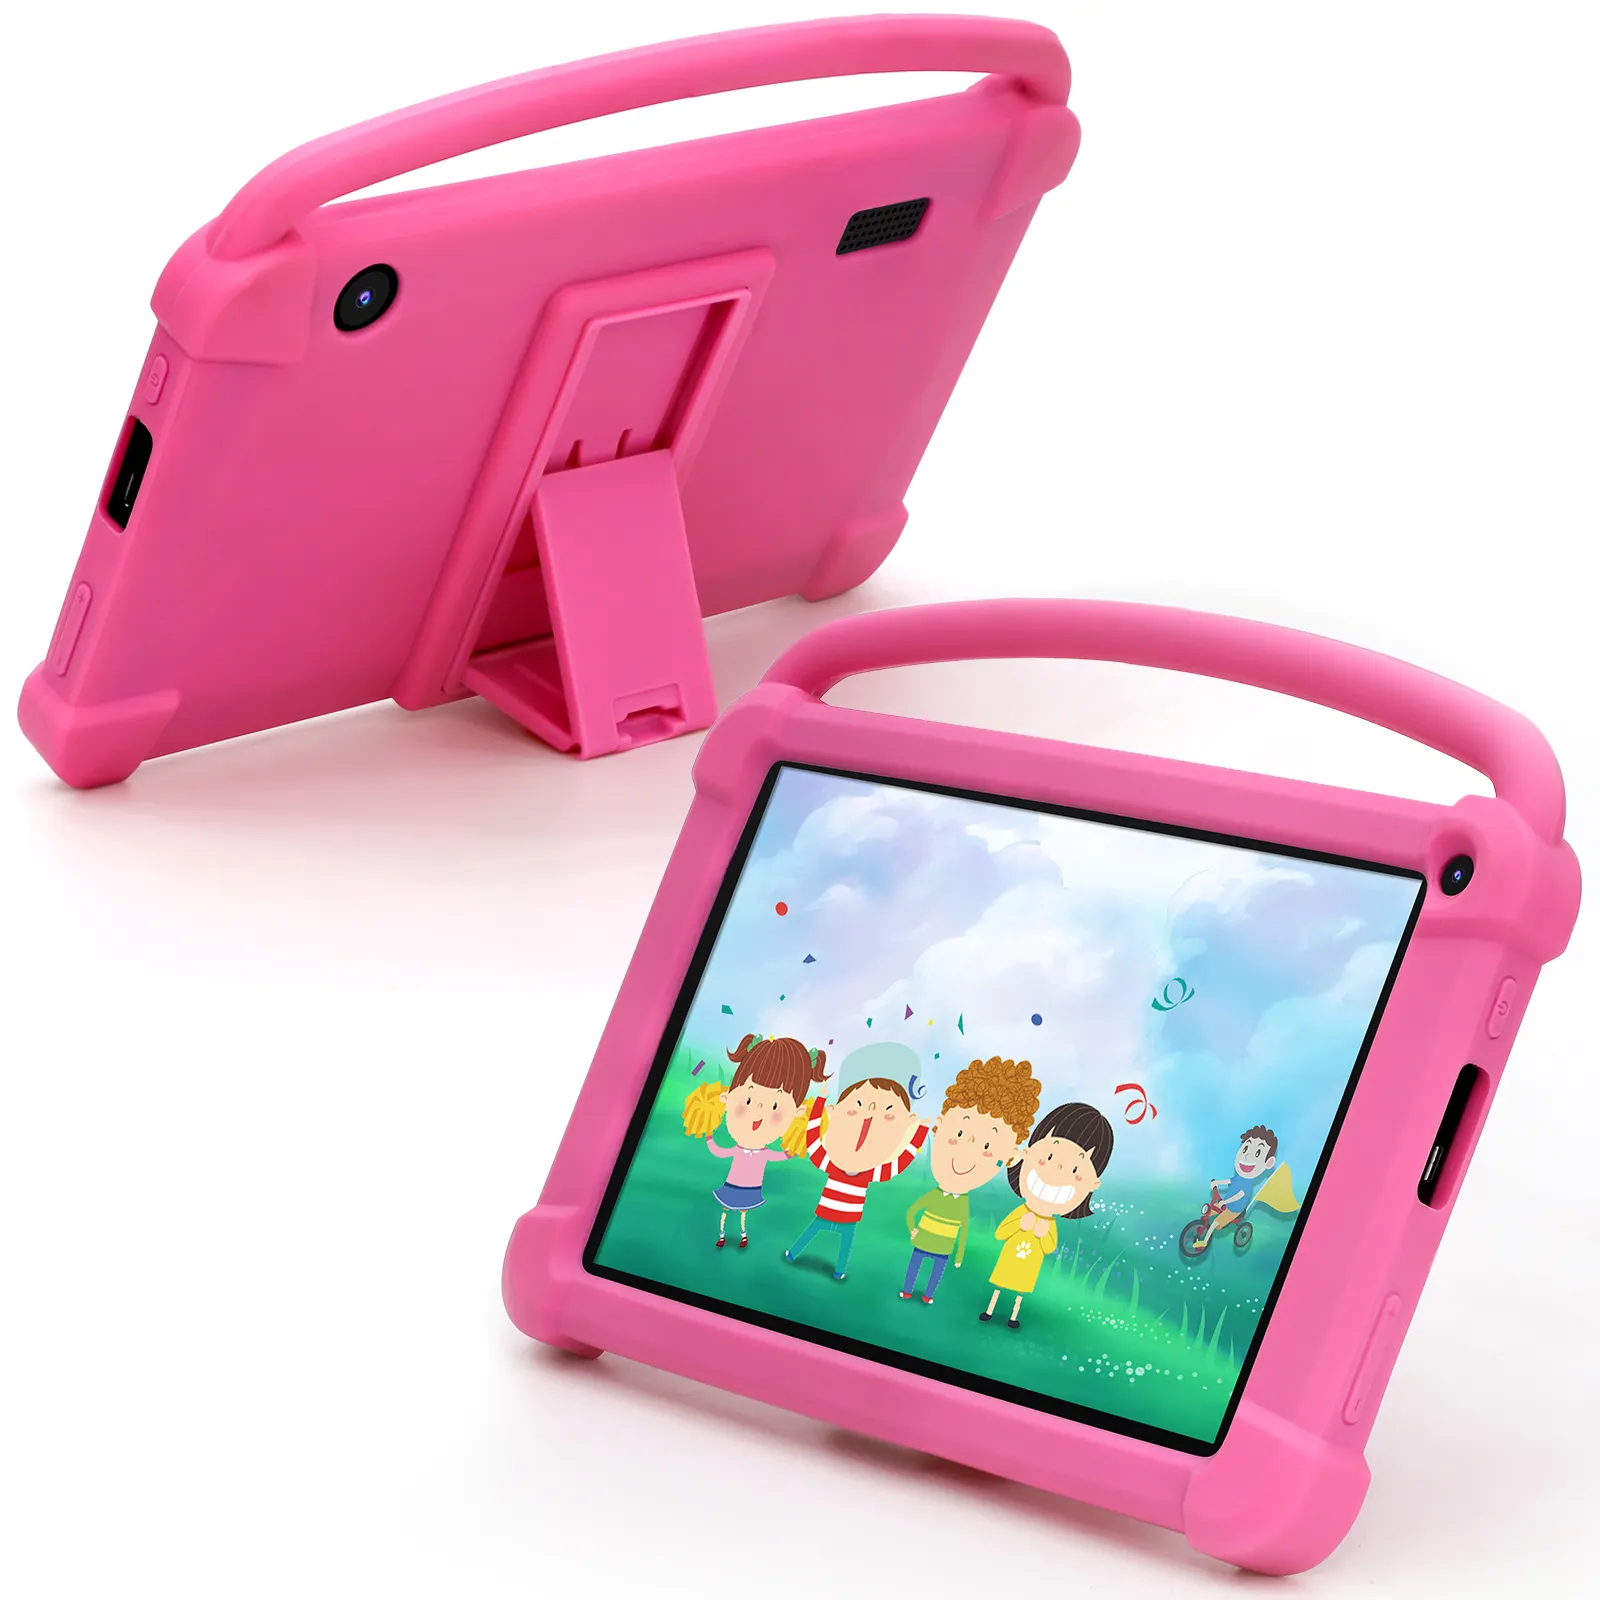 New 2 + 32GB Android 12 trẻ em Tablet PC với USB Loại C sạc giao diện điện dung màn hình trường hợp giáo dục sản xuất Spreadtrum